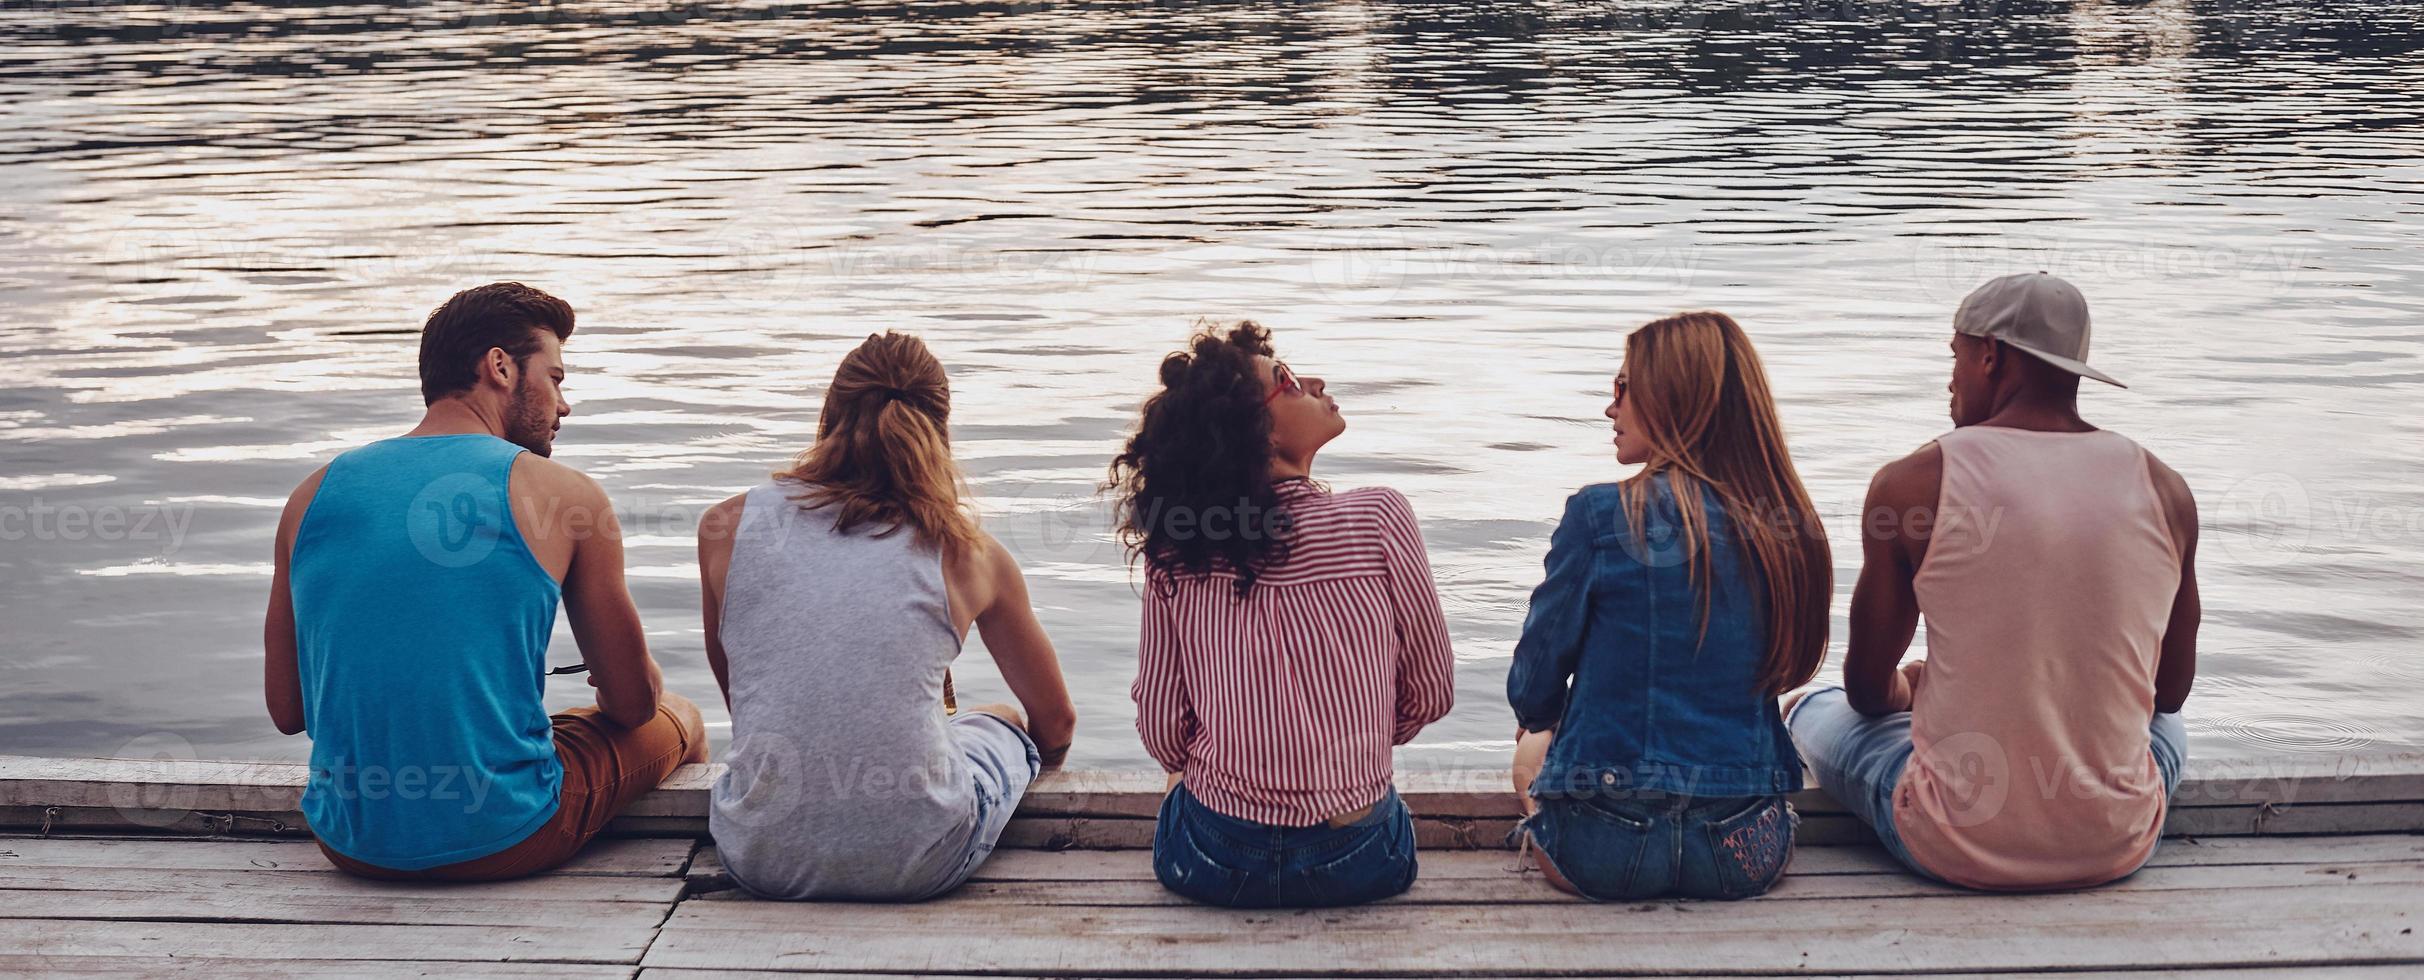 unbeschwerte Zeit mit Freunden. Rückansicht junger Menschen in Freizeitkleidung, die sich unterhalten, während sie auf dem Pier sitzen foto